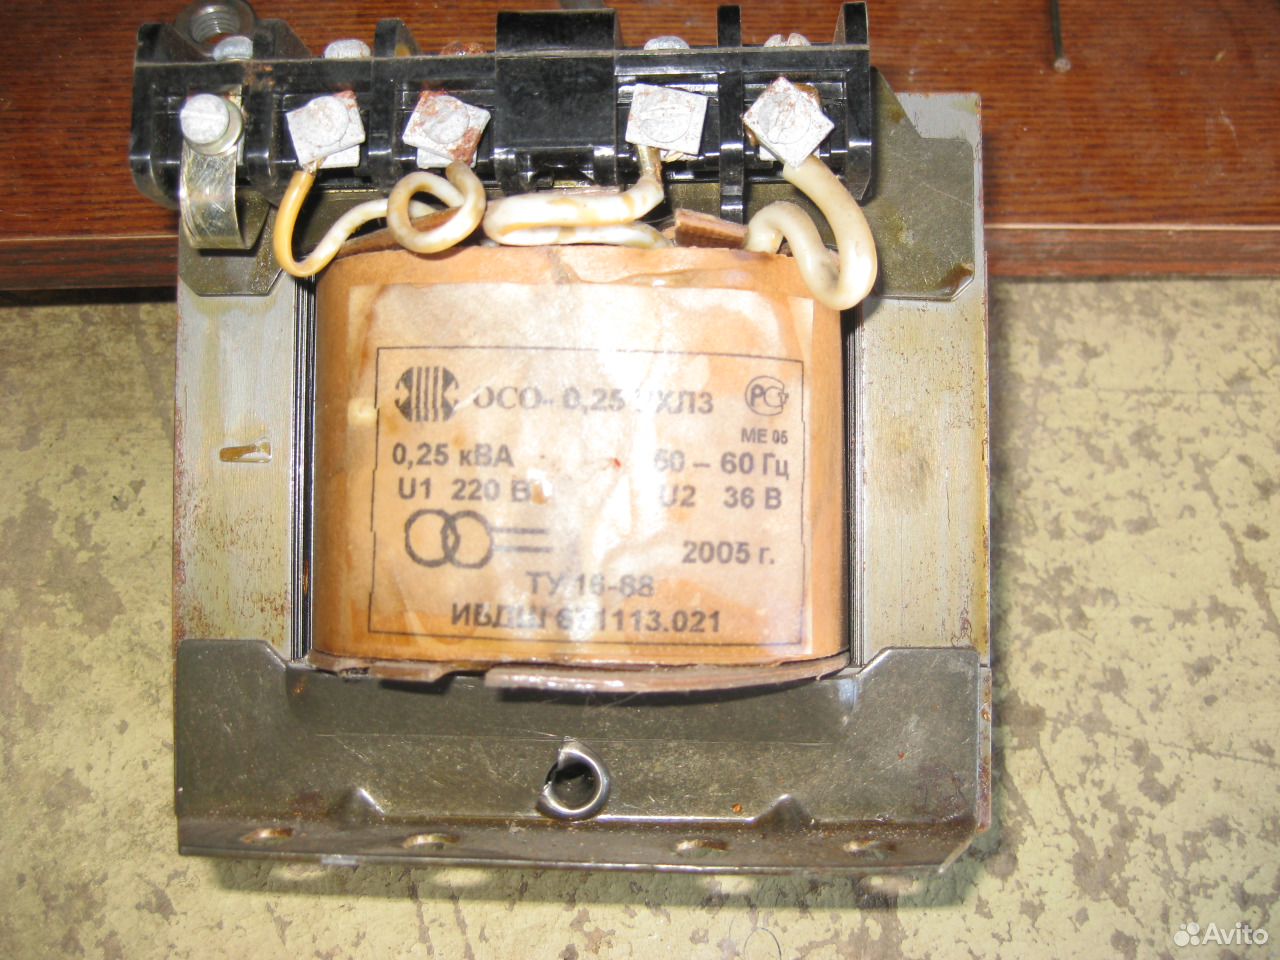 Трансформатор понижающий 220 5. Преобразователь напряжения 220 в 36 вольт. Трансформатор 220 на 36 вольт. Трансформатор понижающий 220/36 СССР. Понижающий трансформатор штиль.